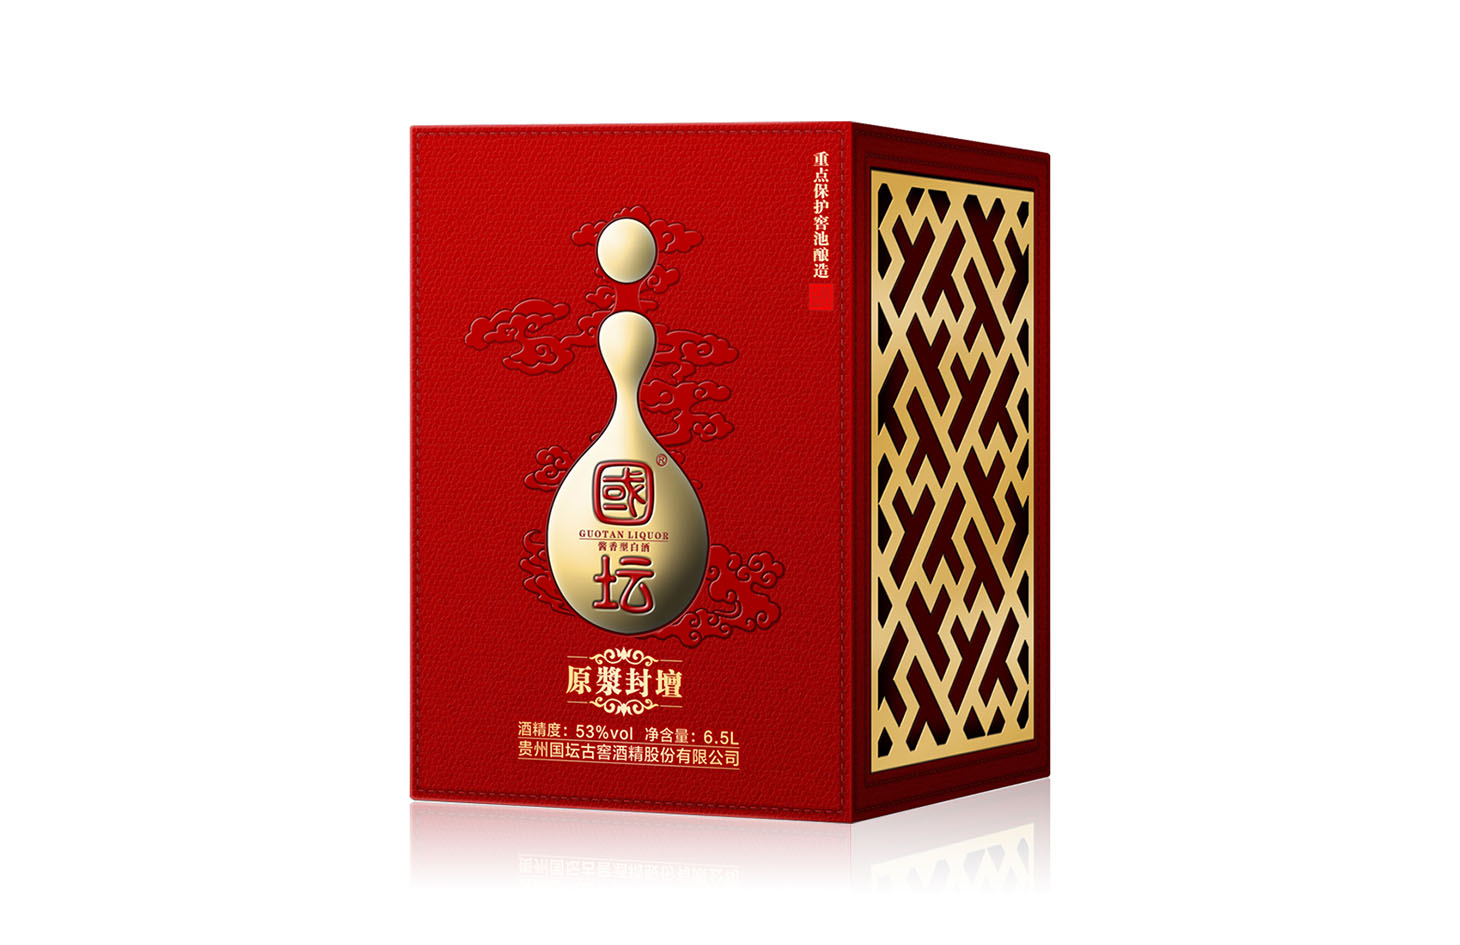 中國(guó)传统元素应用(yòng)于包装盒设计的思路